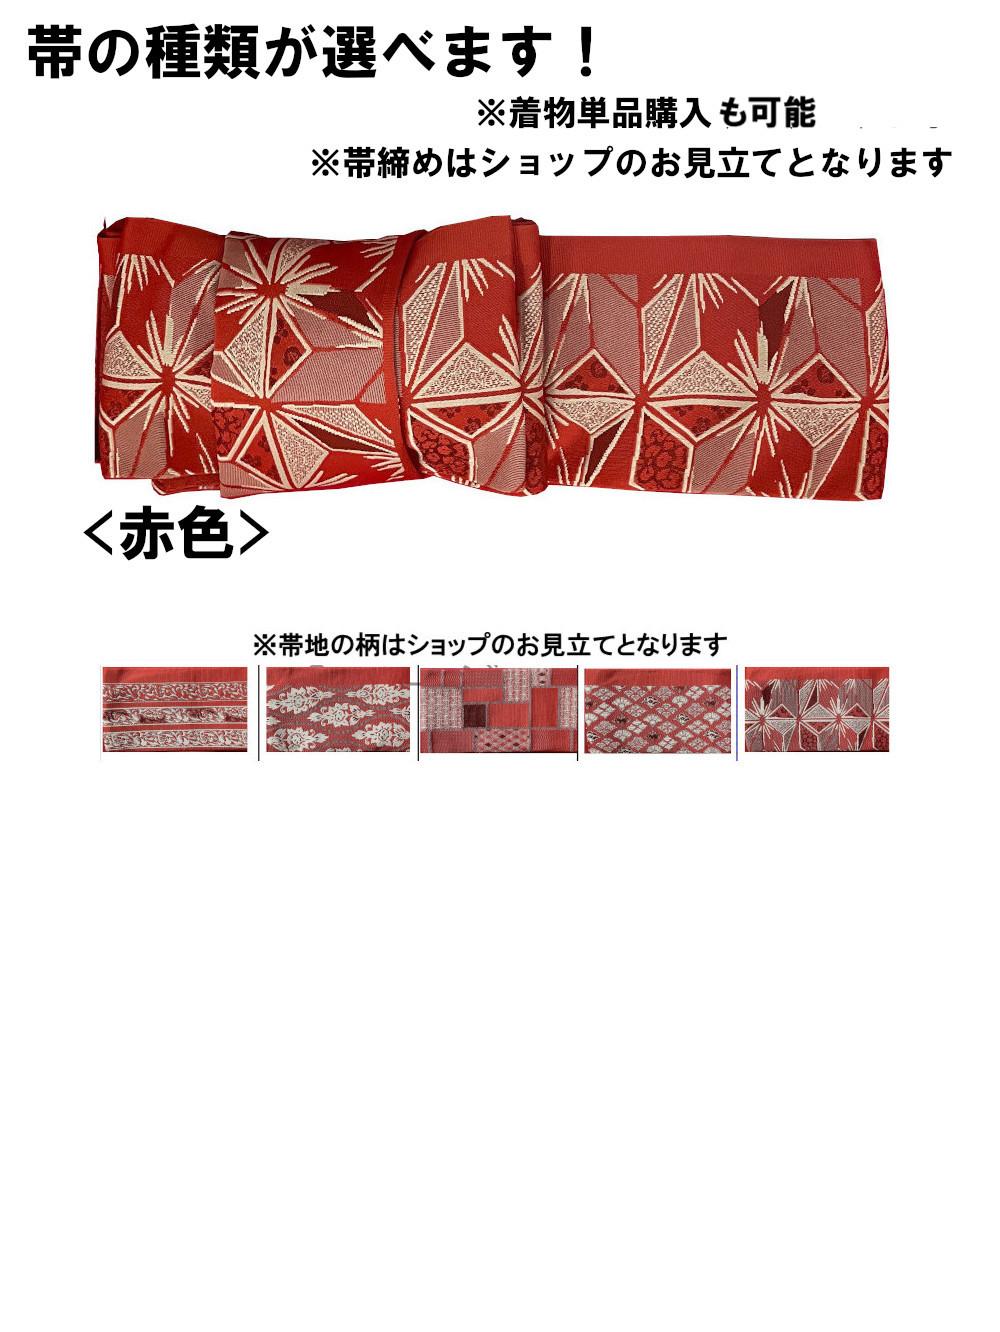 衿なし着物(リボン帯付き) [花雪輪 ピンク] ※着物単品 ¥11,000画像